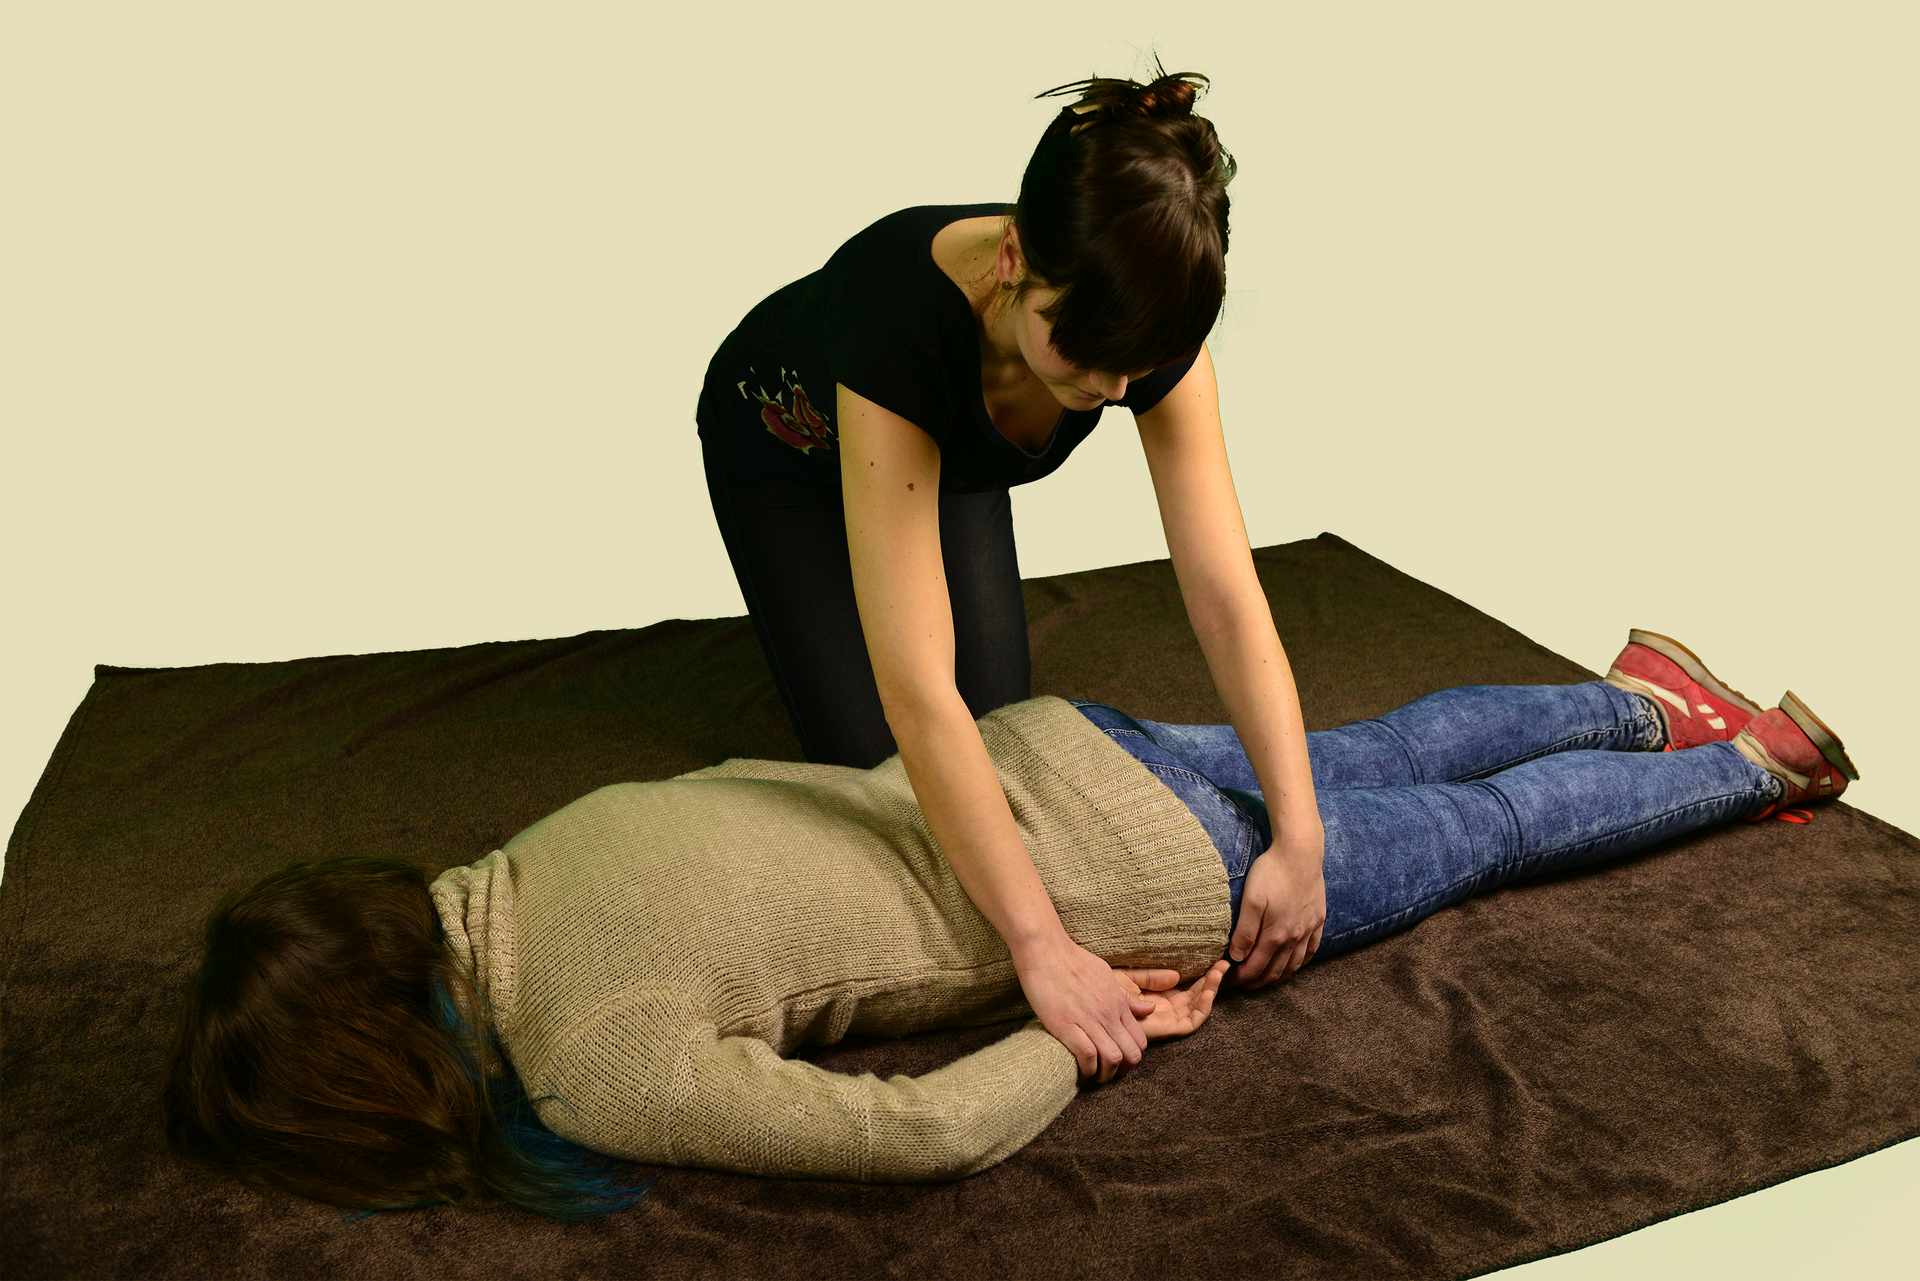 Poszkodowana osoba leży na brzuchu. Ręce ułożone wzdłuż tułowia. Nogi proste, równolegle do siebie. Twarz zwrócona do podłoża. Osoba leży zwrócona głową w lewą stronę zdjęcia. Obok poszkodowanej osoby, w głębi zdjęcia, klęczy kobieta układająca poszkodowaną osobę w pozycji bezpiecznej. Kobieta przytrzymuje dłoń i biodro osoby leżącej. Dłoń wkłada pod biodro.